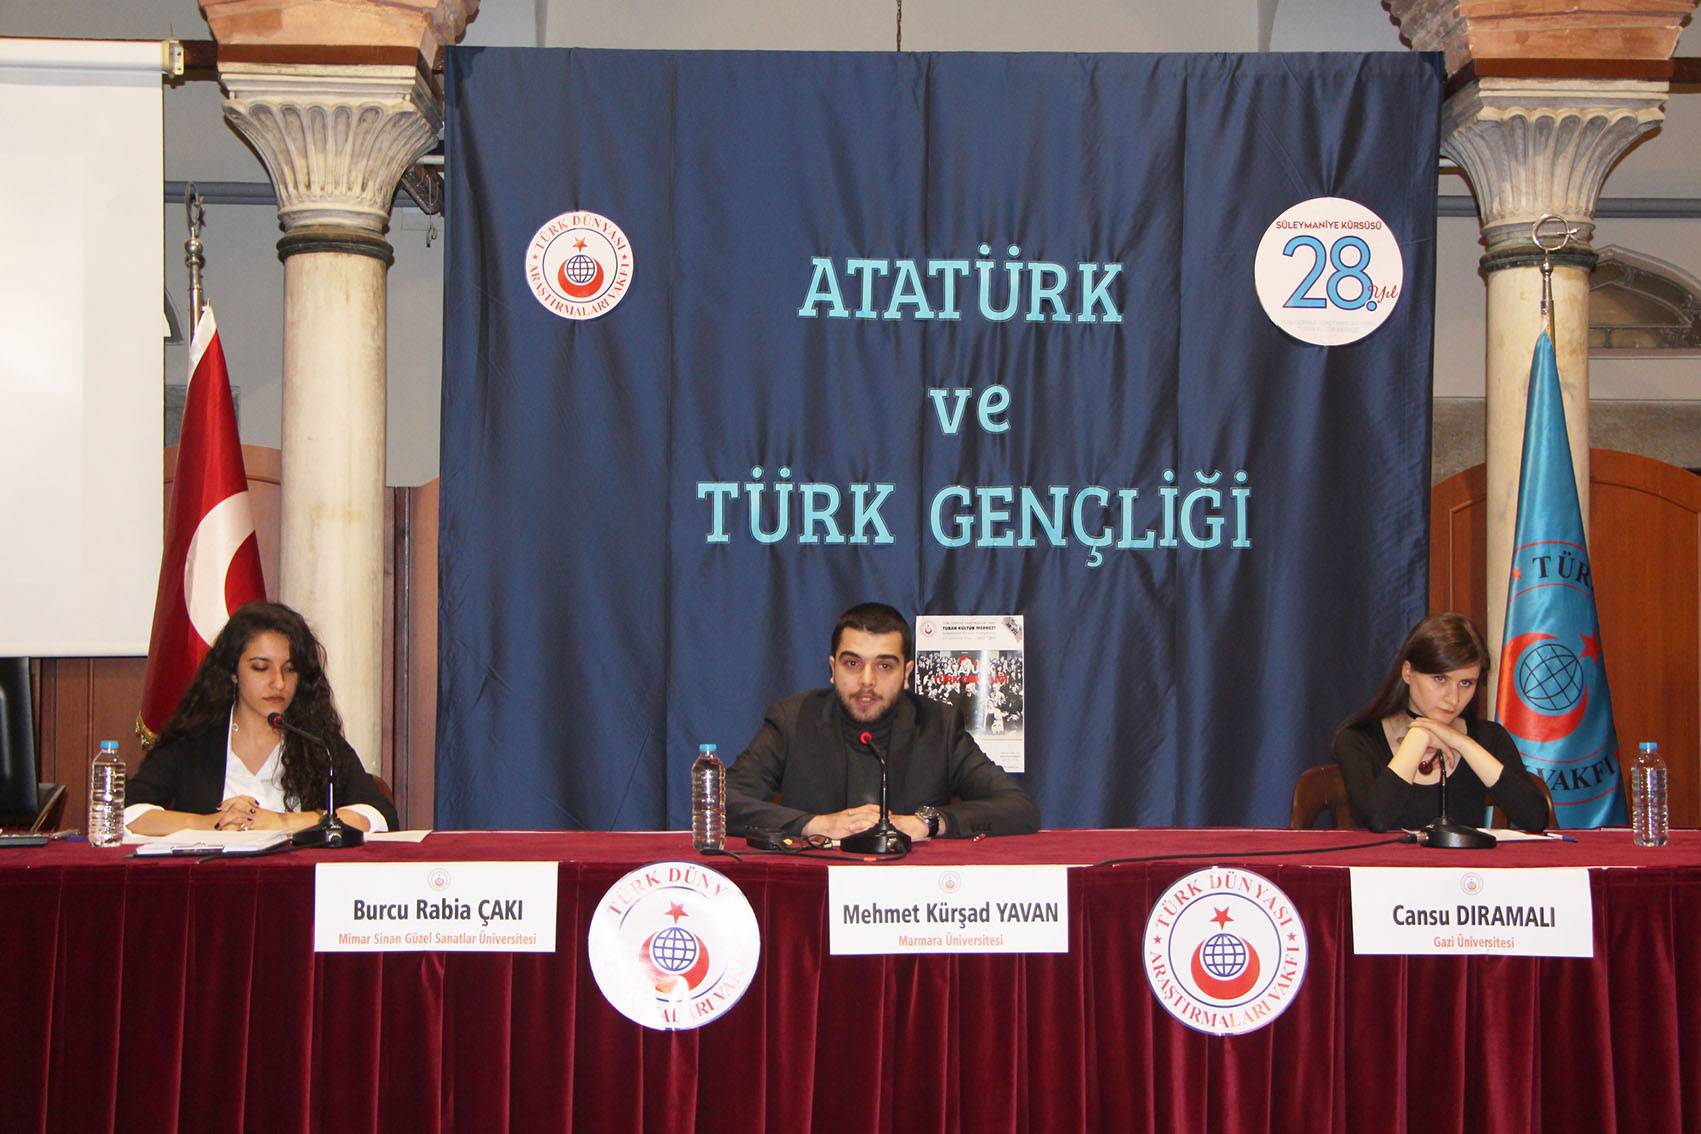 Atatürk ve Türk Gençliği